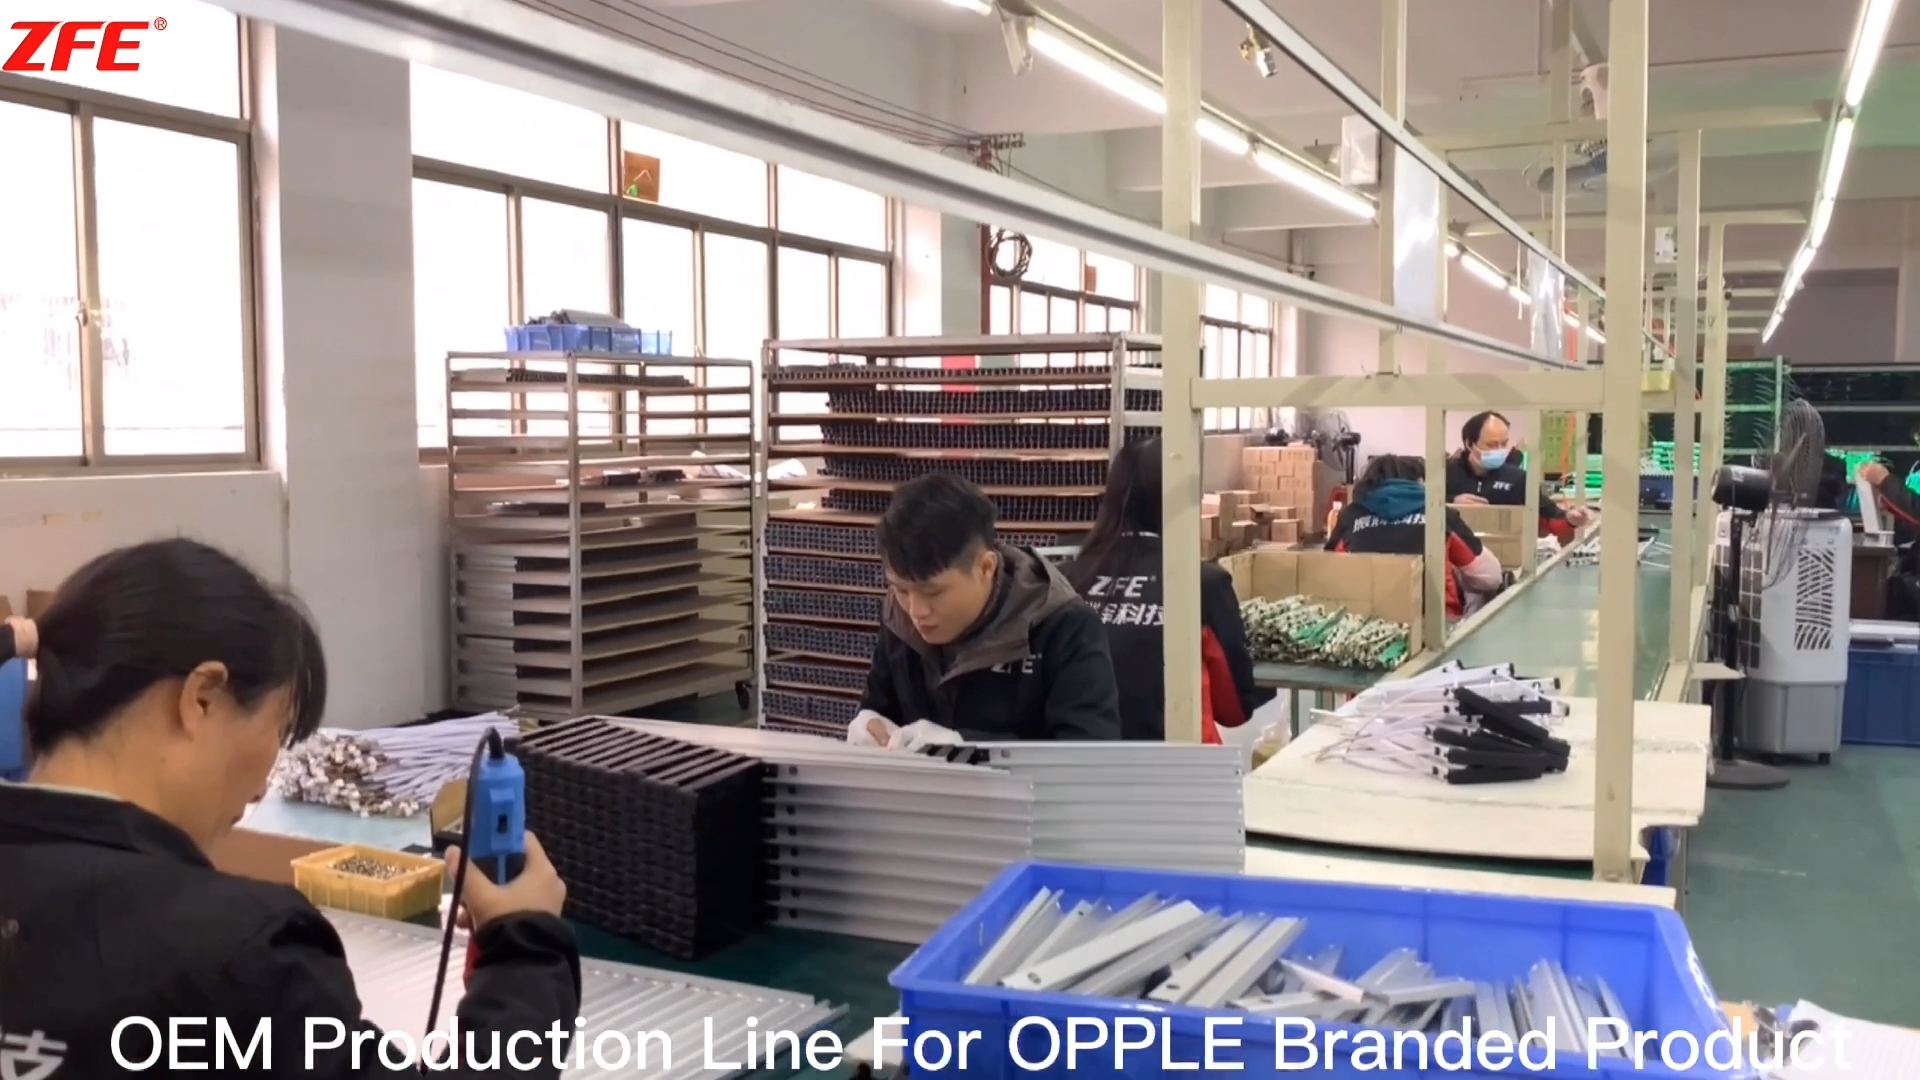 Kundenspezifische OEM-Produktionslinie für OPPLE-Markenprodukte, hergestellt von Guangdong Zhenhui Fire Technology